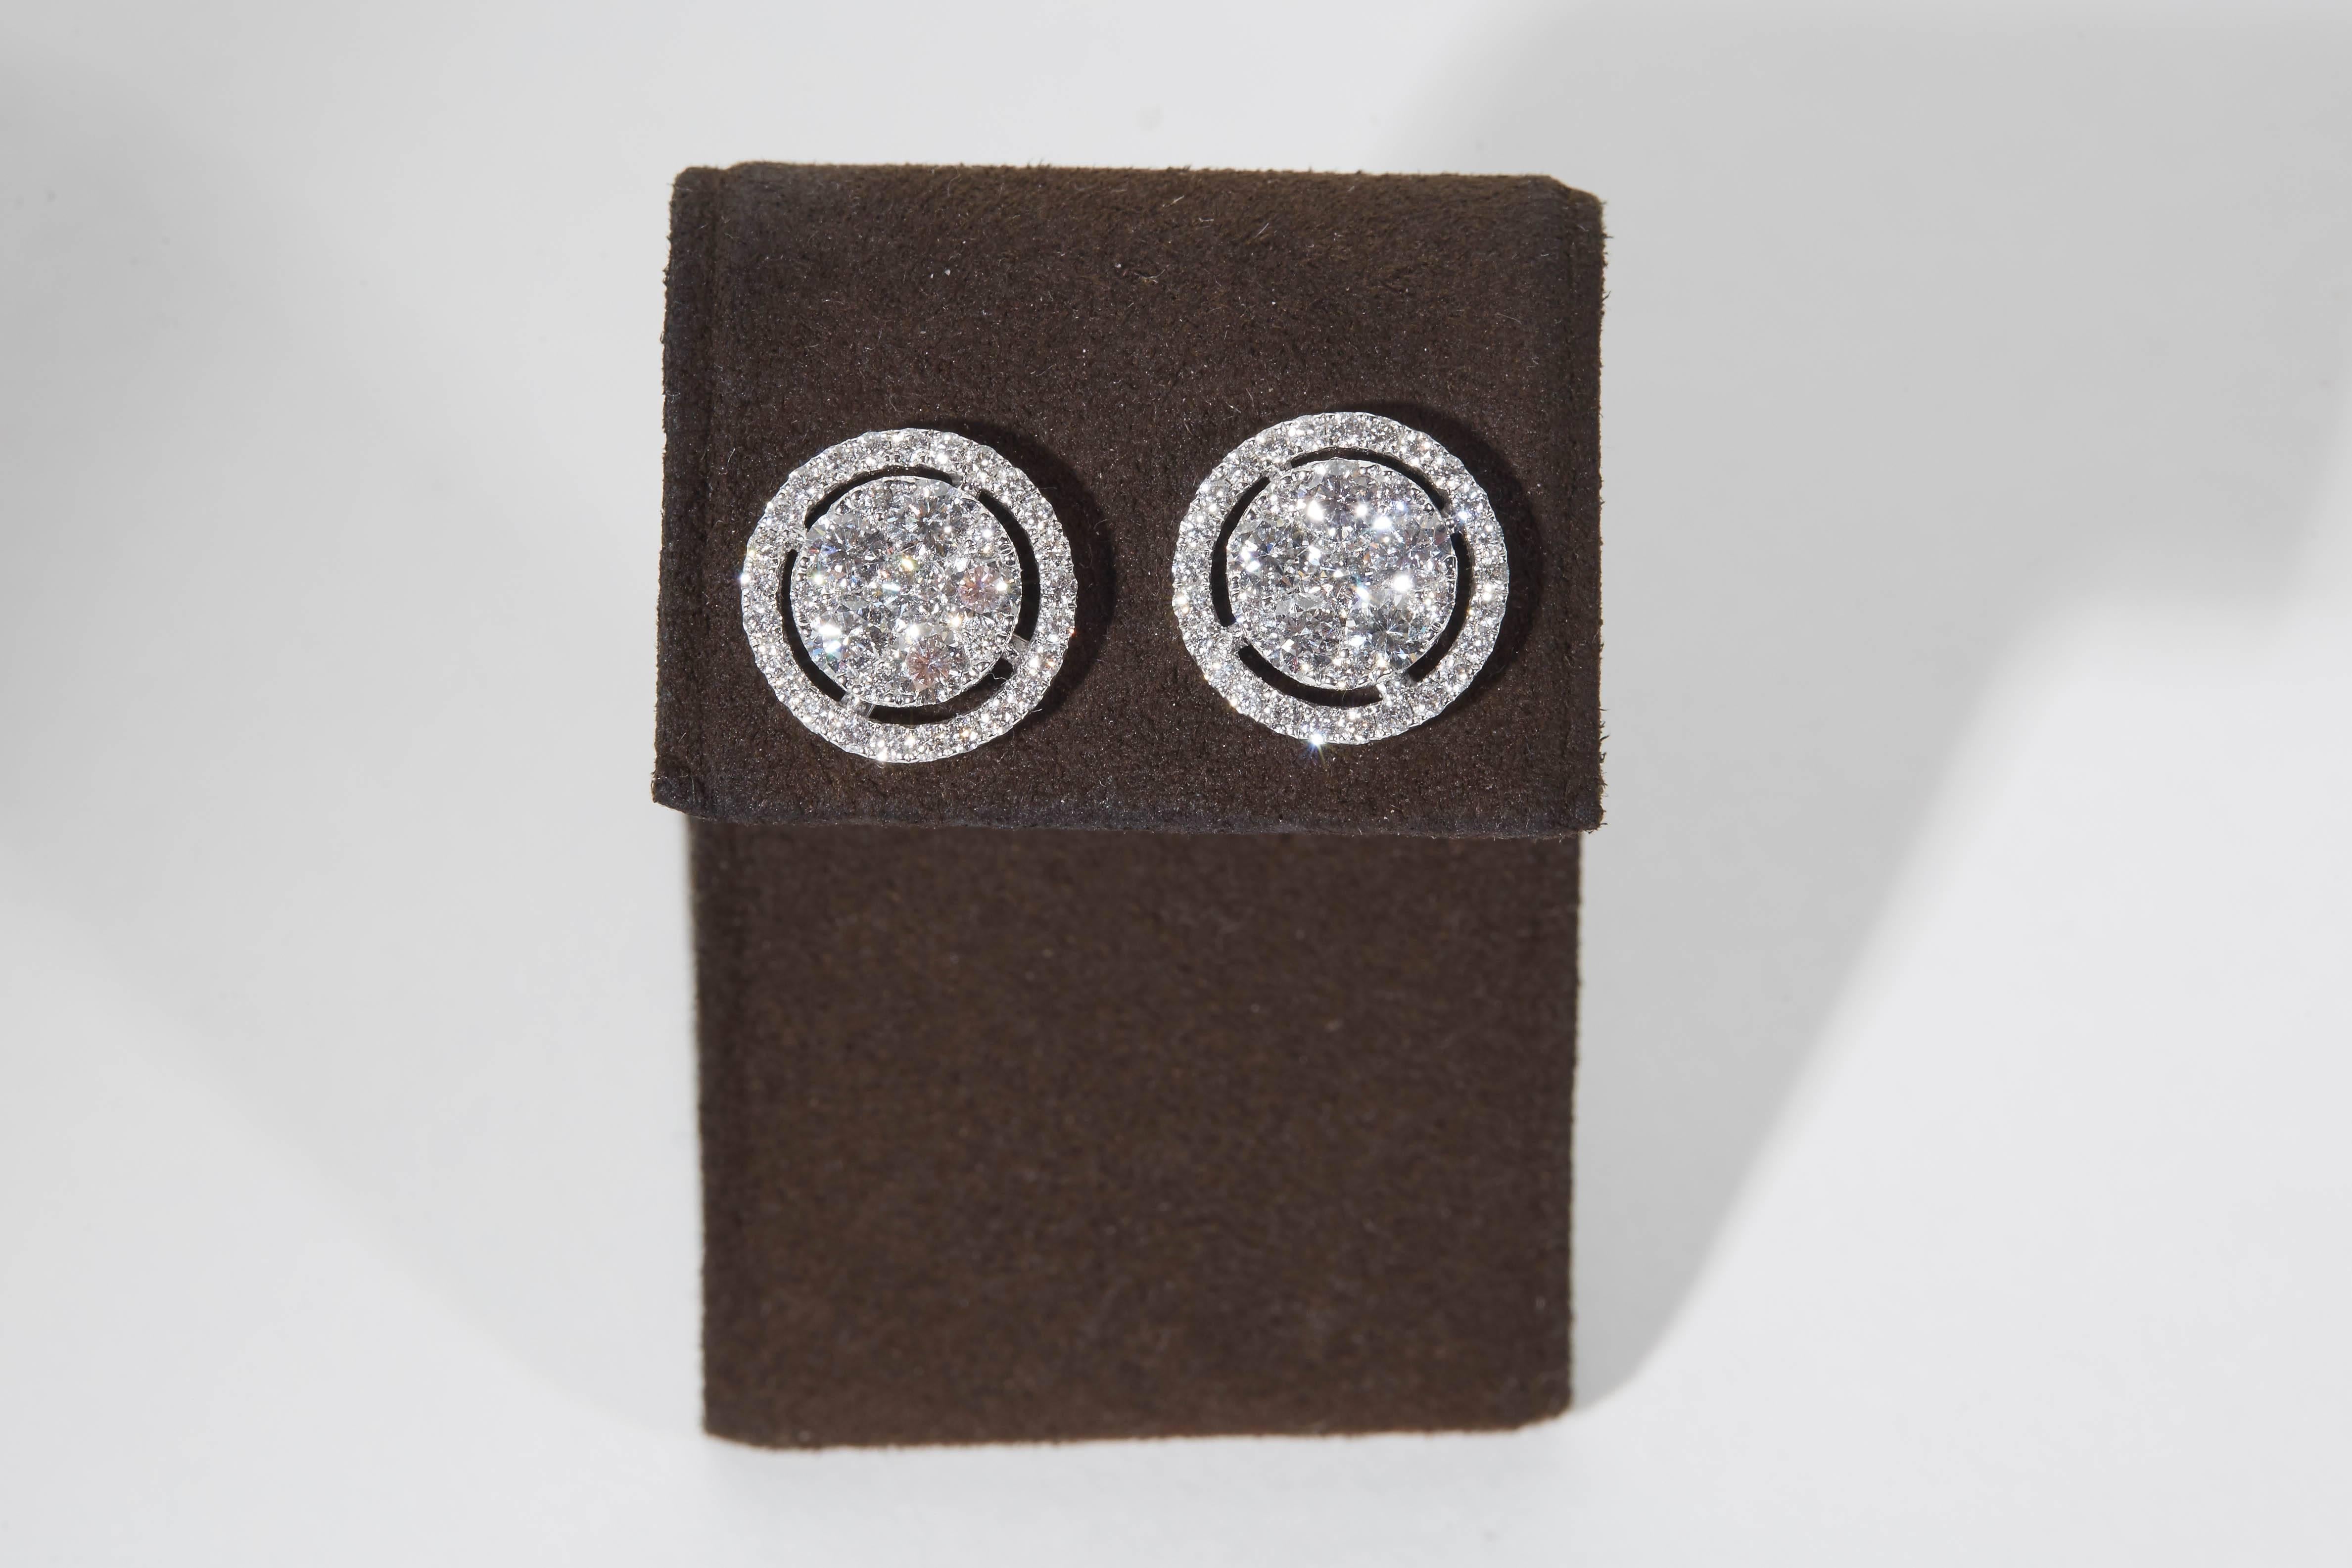 
Une superbe paire de boucles d'oreilles en diamant !

Composées de diamants ronds de taille brillante, ces boucles d'oreilles sont d'une grande brillance et d'un grand éclat. 

1,94 carats de diamants blancs incolores VS sertis dans de l'or blanc